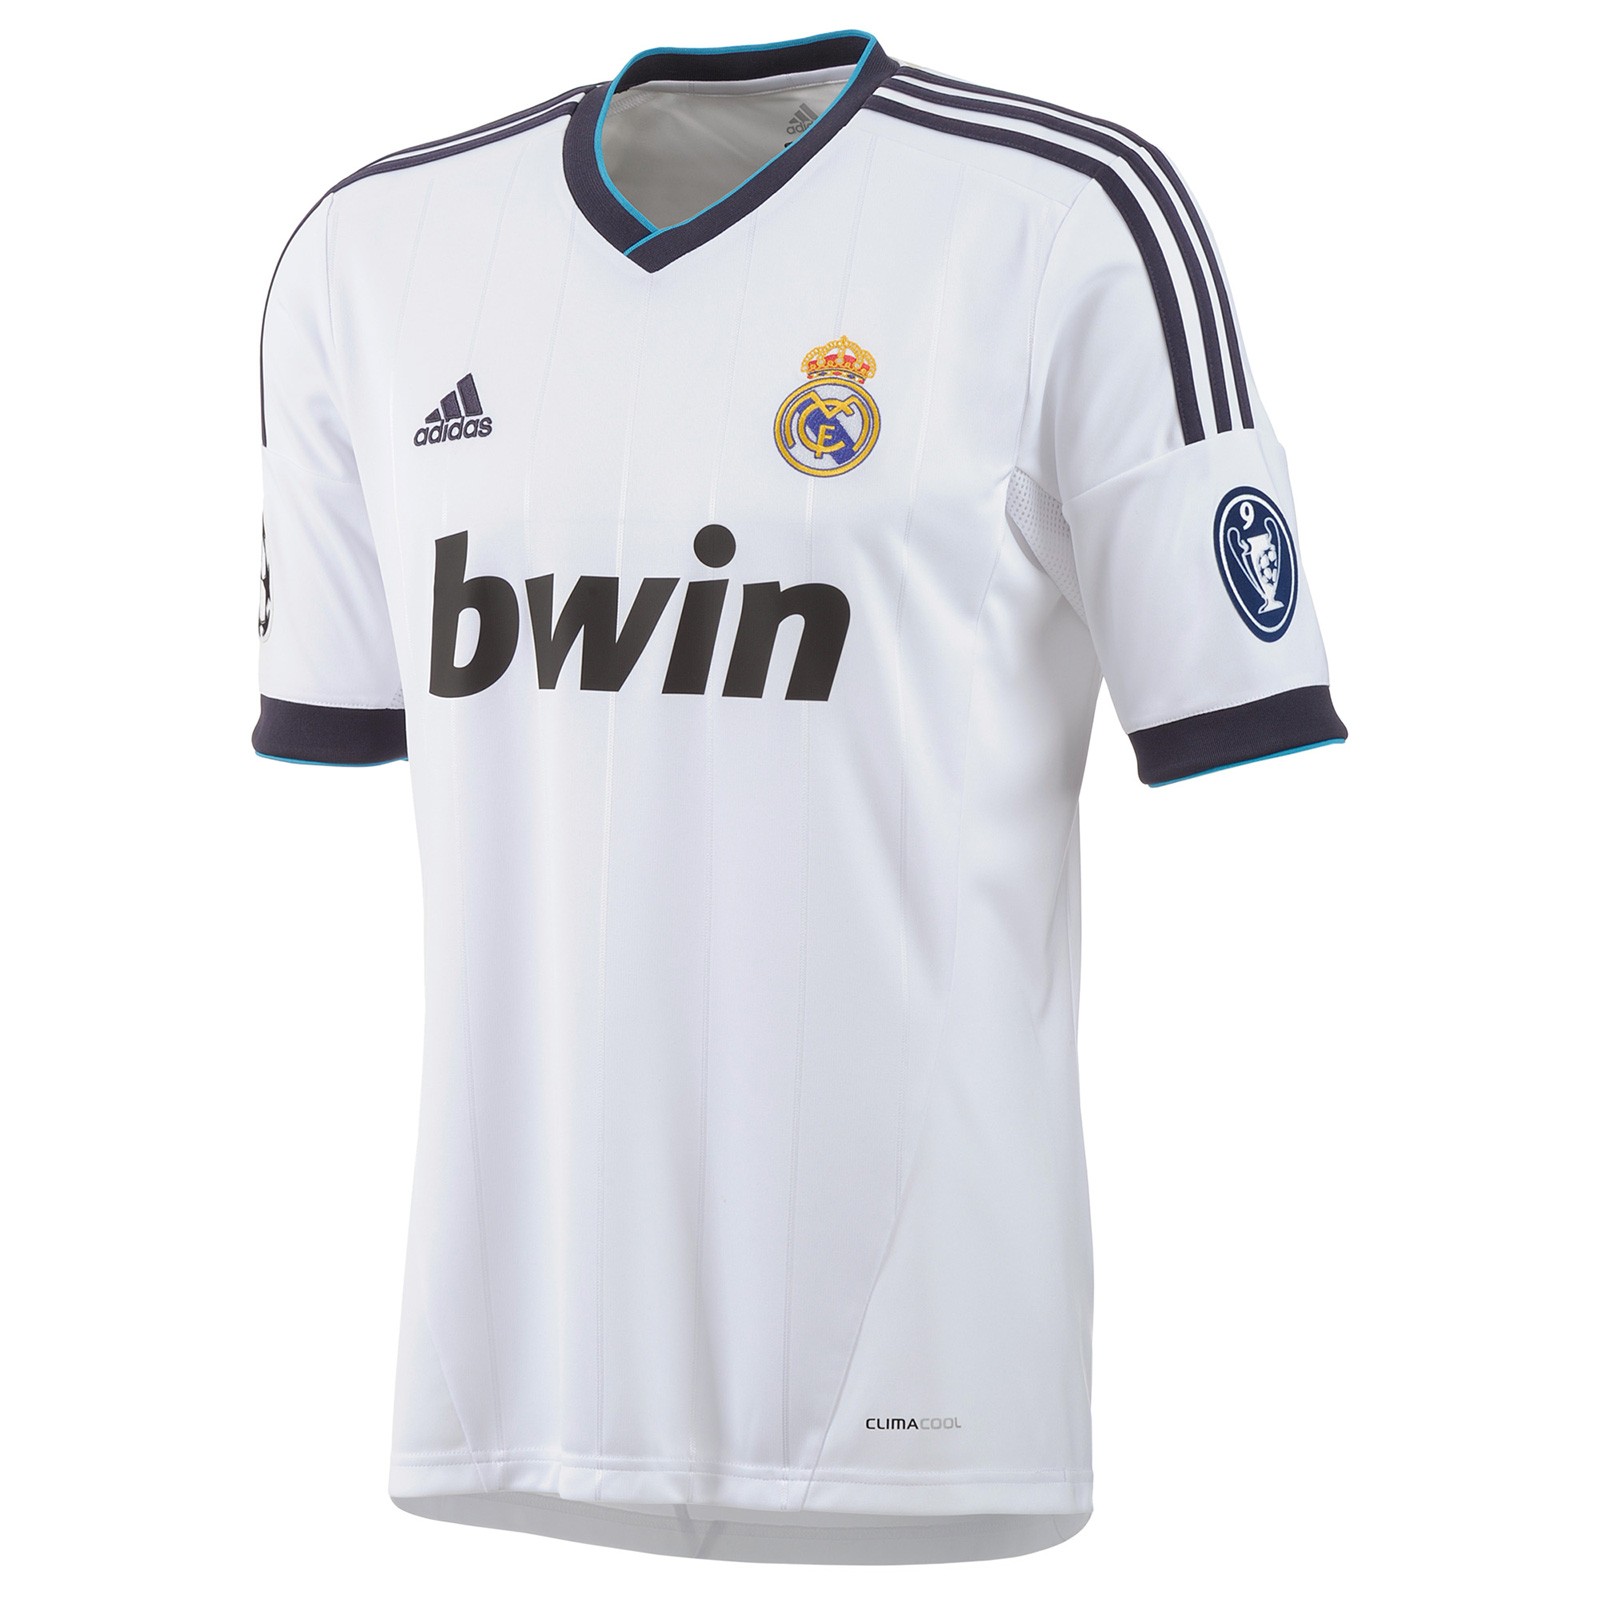 皇家马德里2012-13赛季欧冠球迷版主场球衣